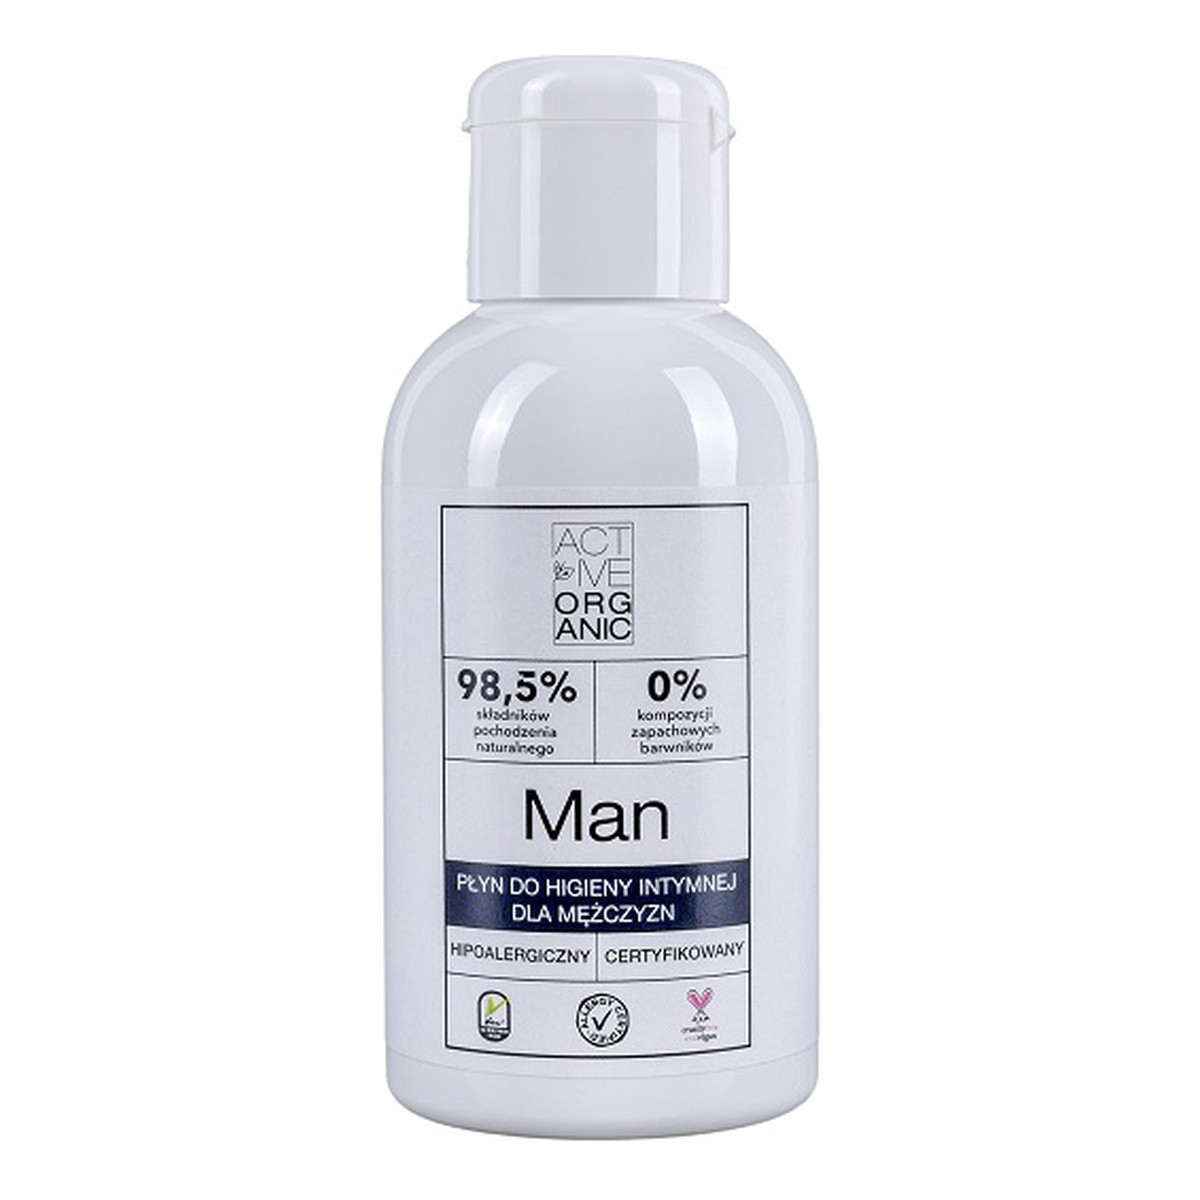 Active Organic Man płyn do higieny intymnej dla mężczyzn 100ml